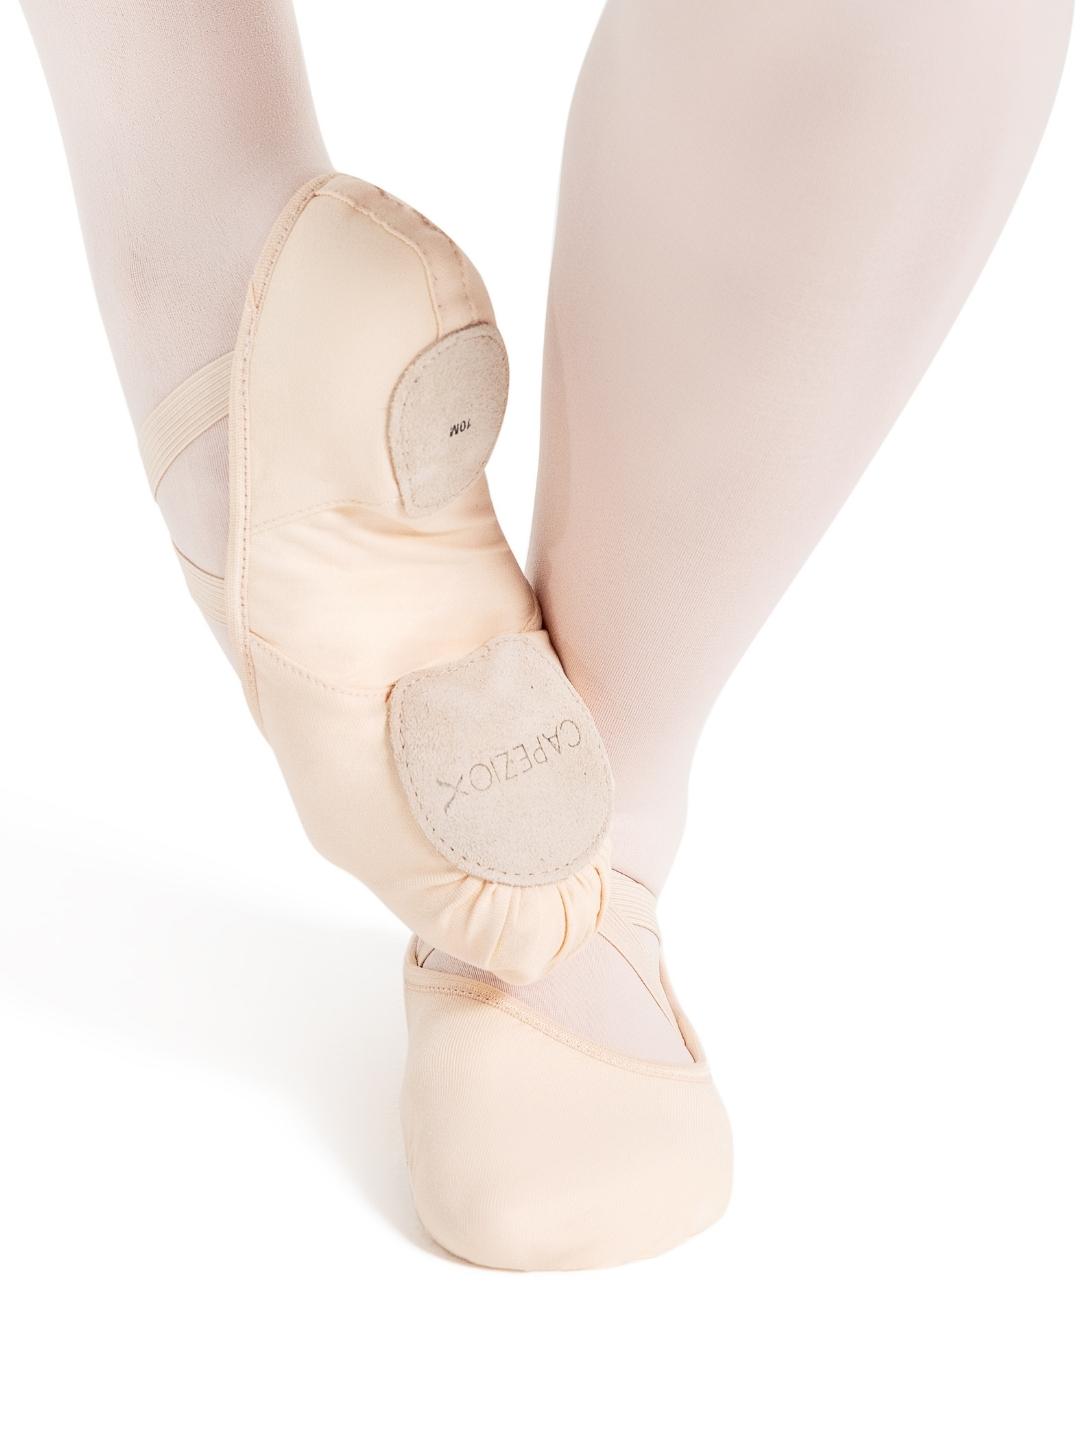 Hanami Ballet Shoe- Child